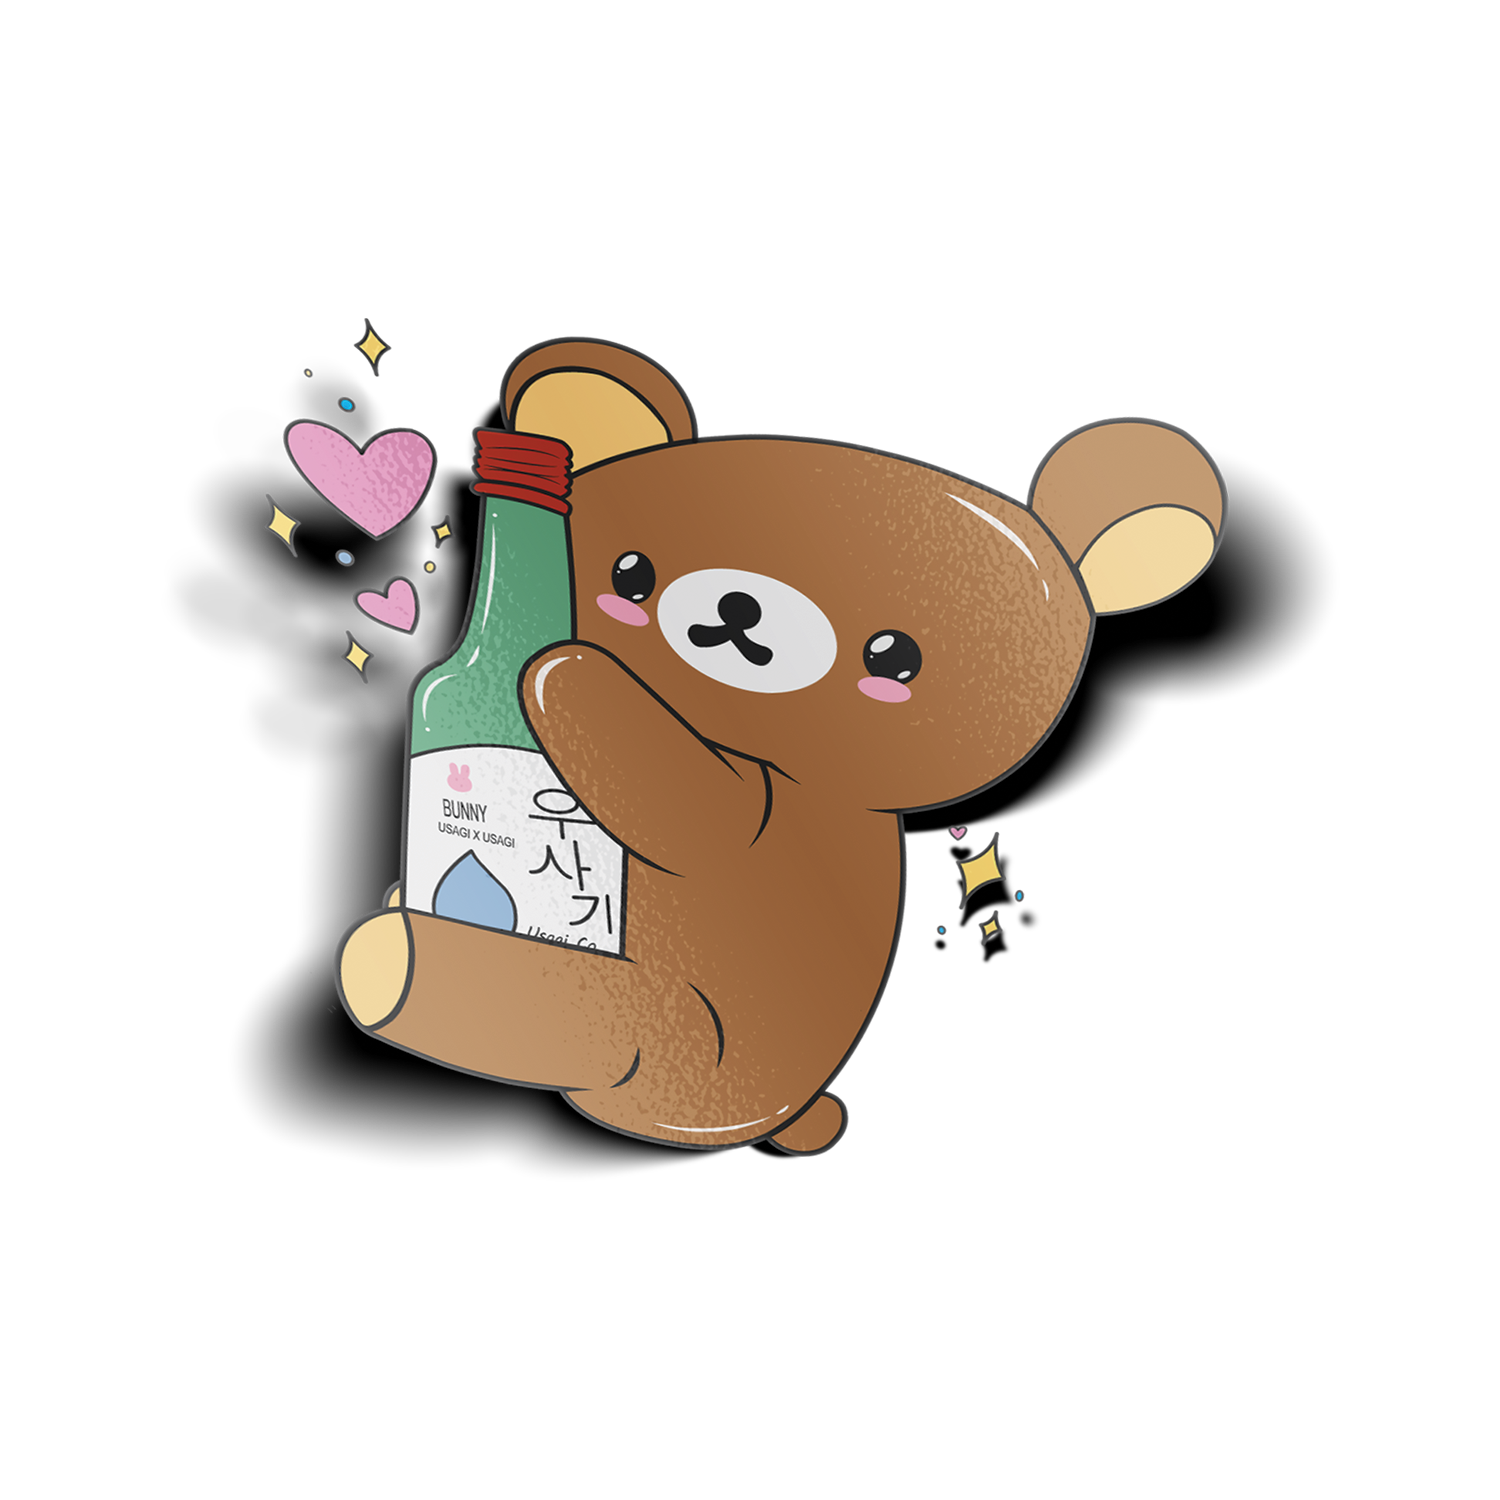 Soju Kuma Sticker design features brown bear holding a soju bottle.